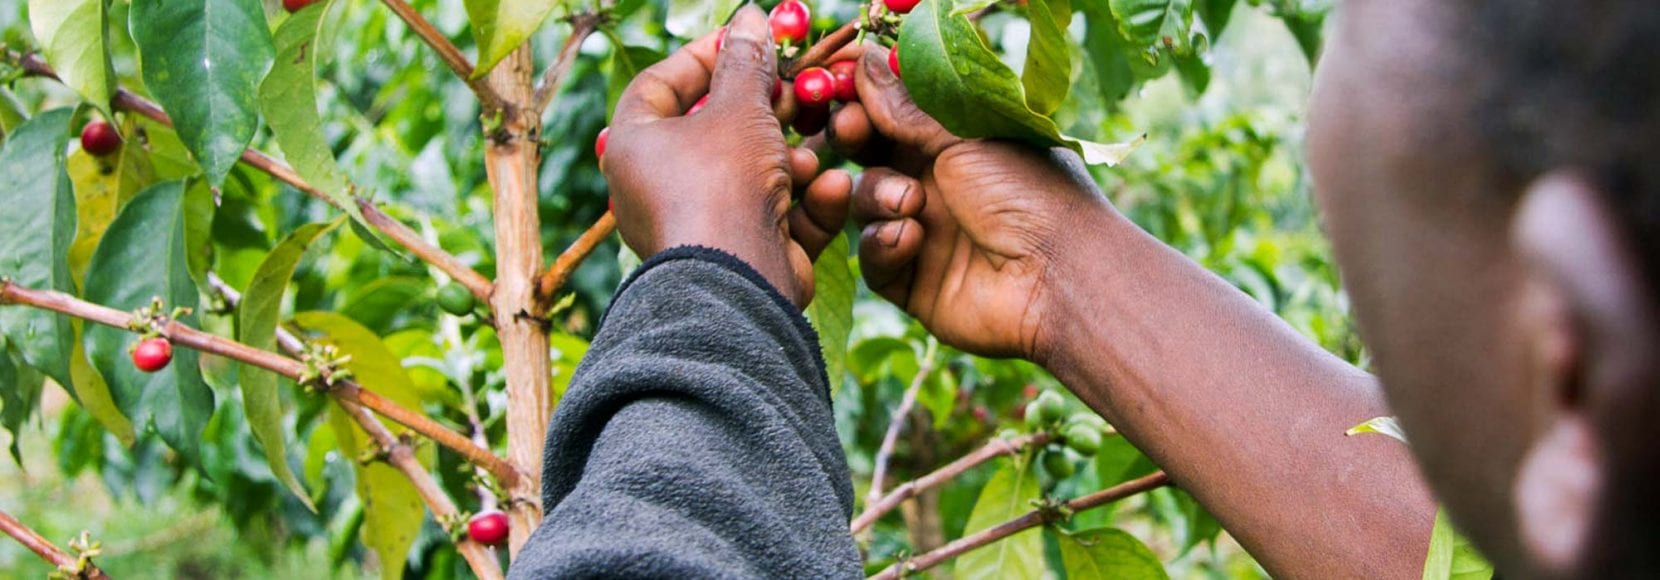 Farmer picking coffee cherries in kenya